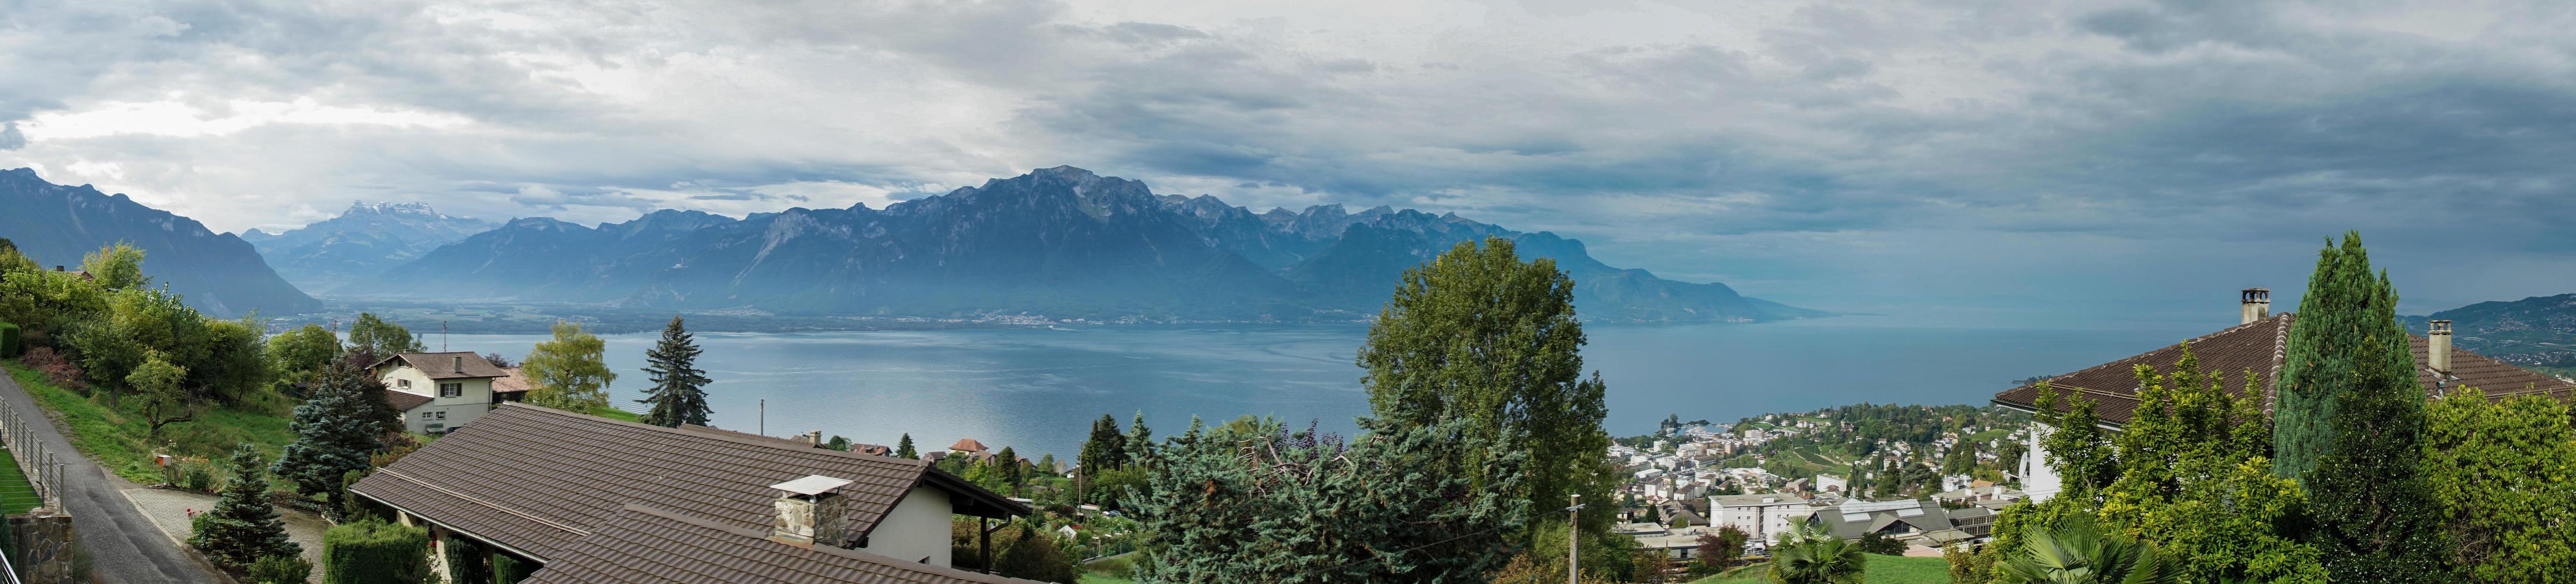 panoramautsikt över Genèvesjön nära montreux foto